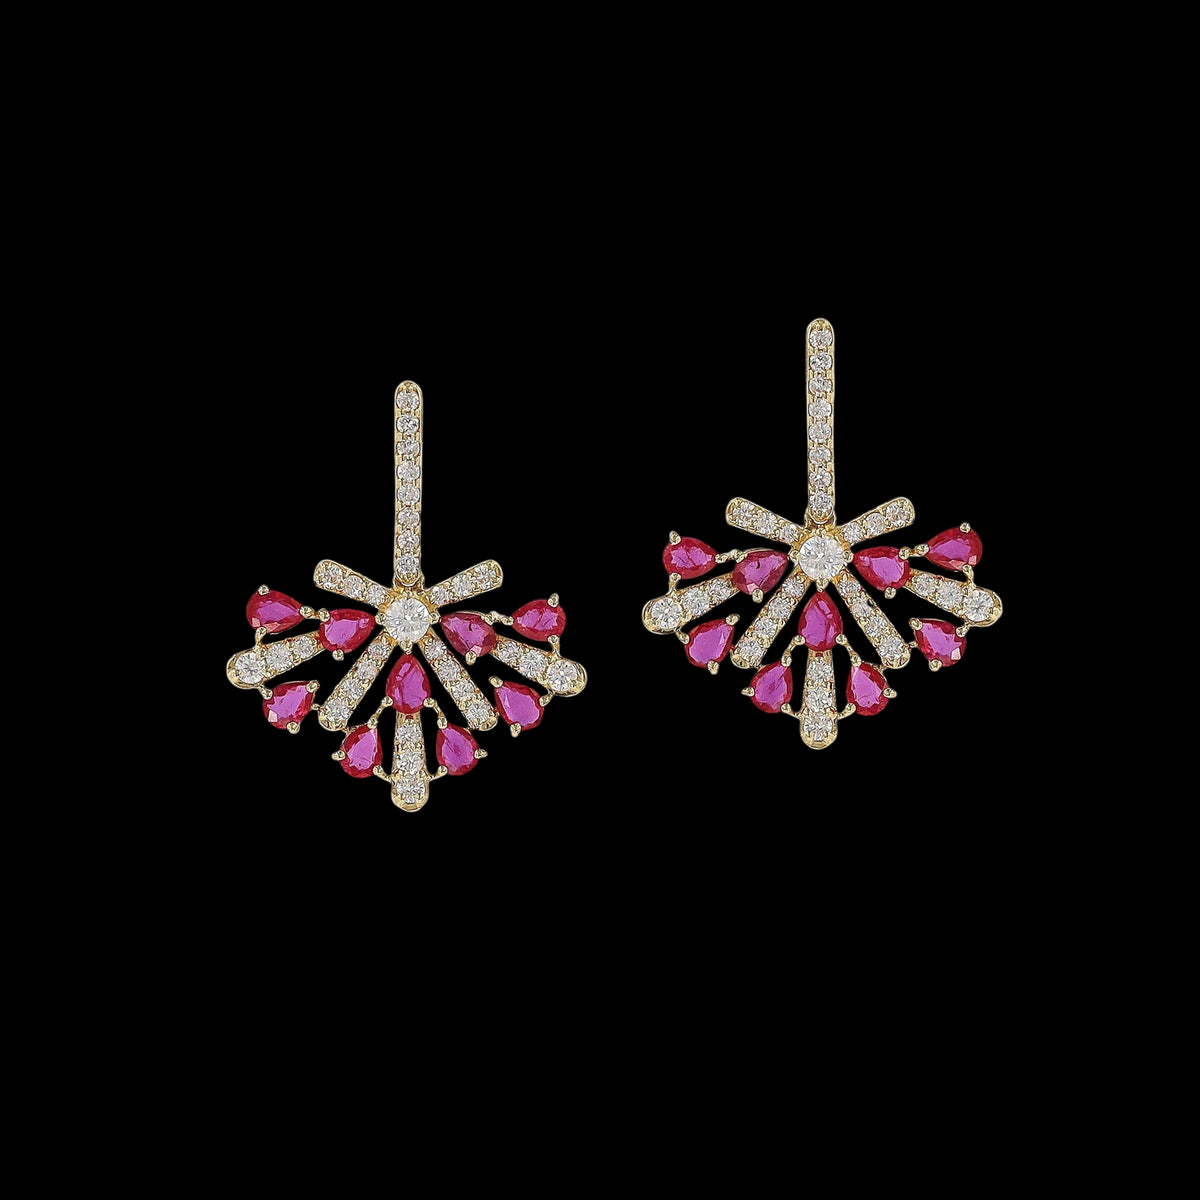 Pushpak Diamond and Ruby Earrings